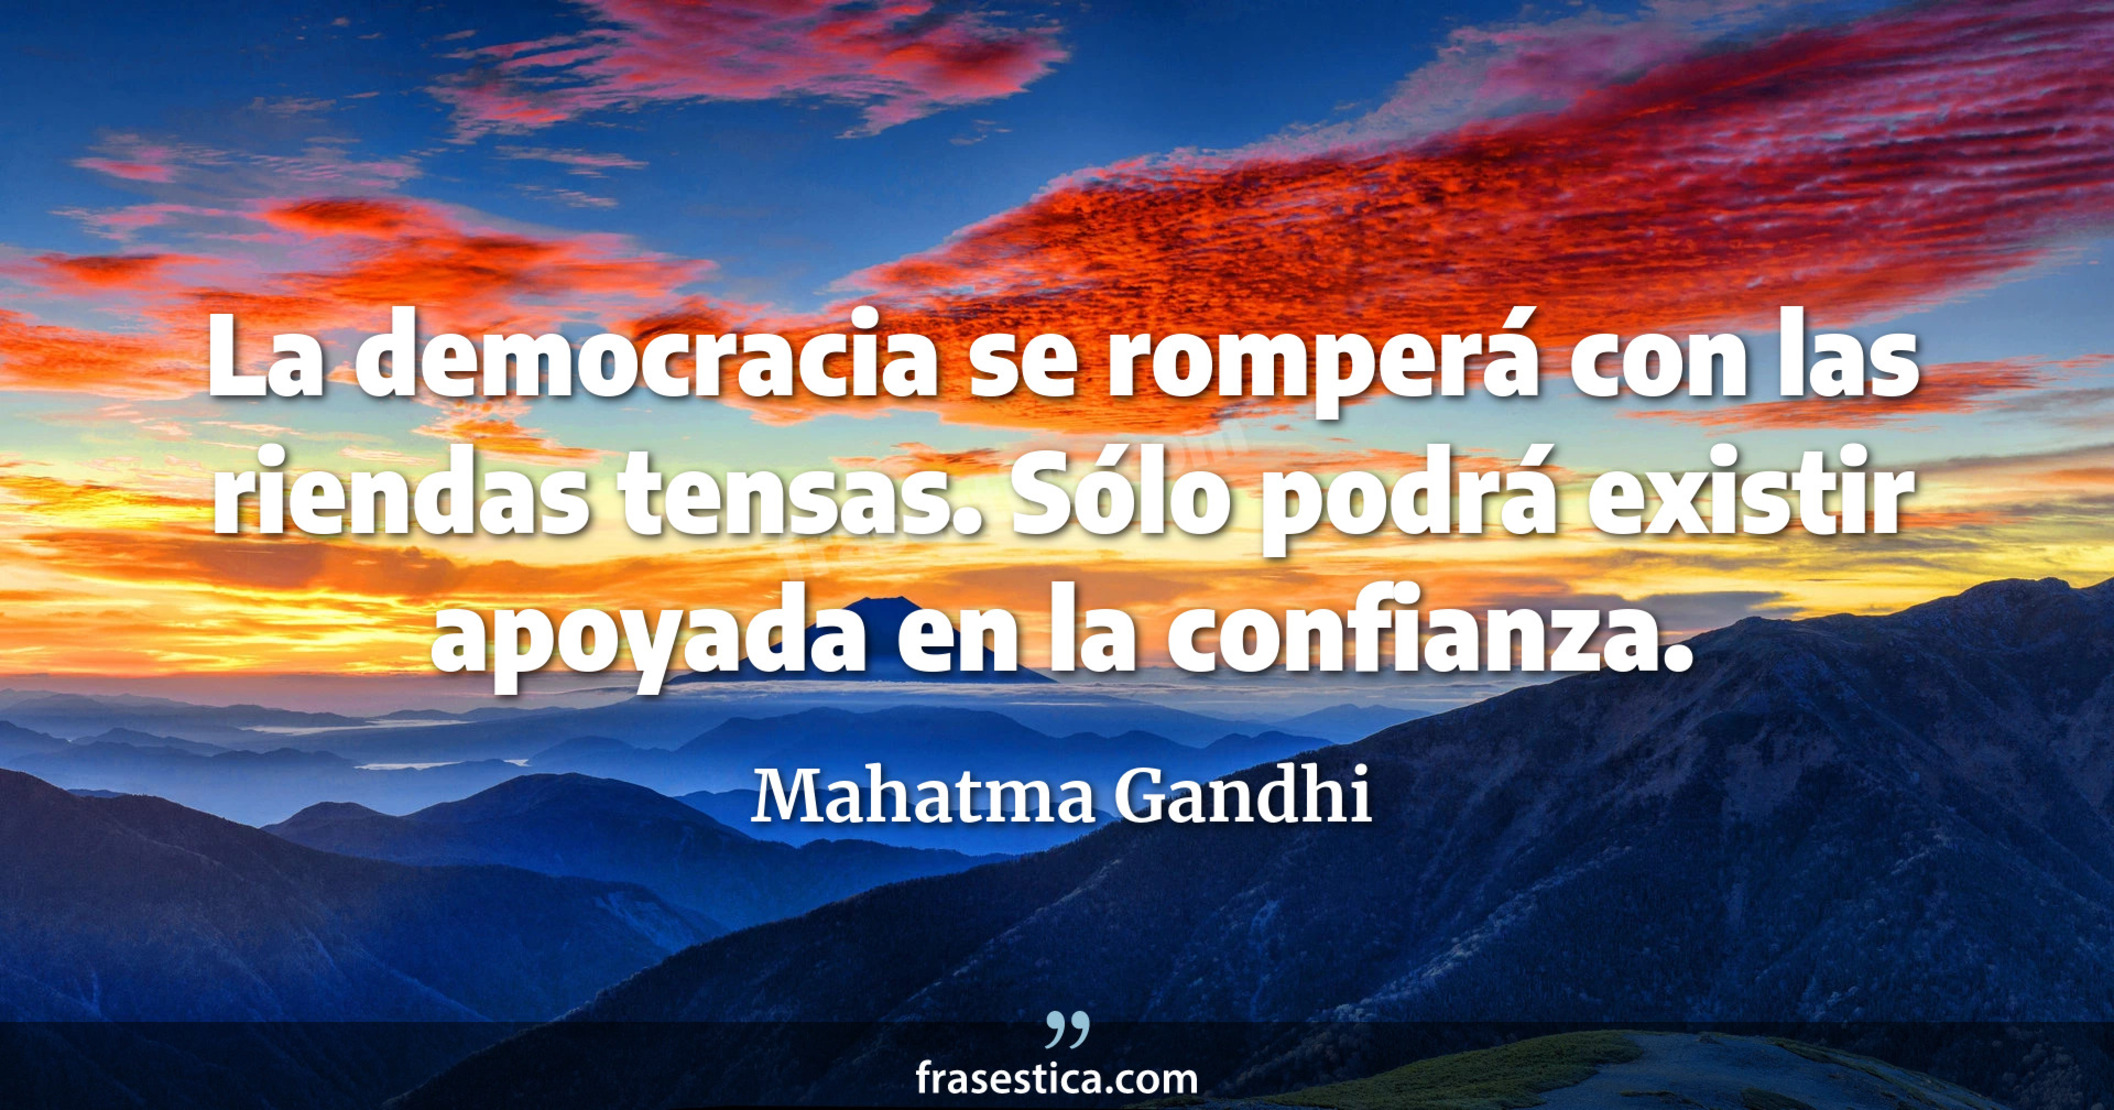 La democracia se romperá con las riendas tensas. Sólo podrá existir apoyada en la confianza. - Mahatma Gandhi